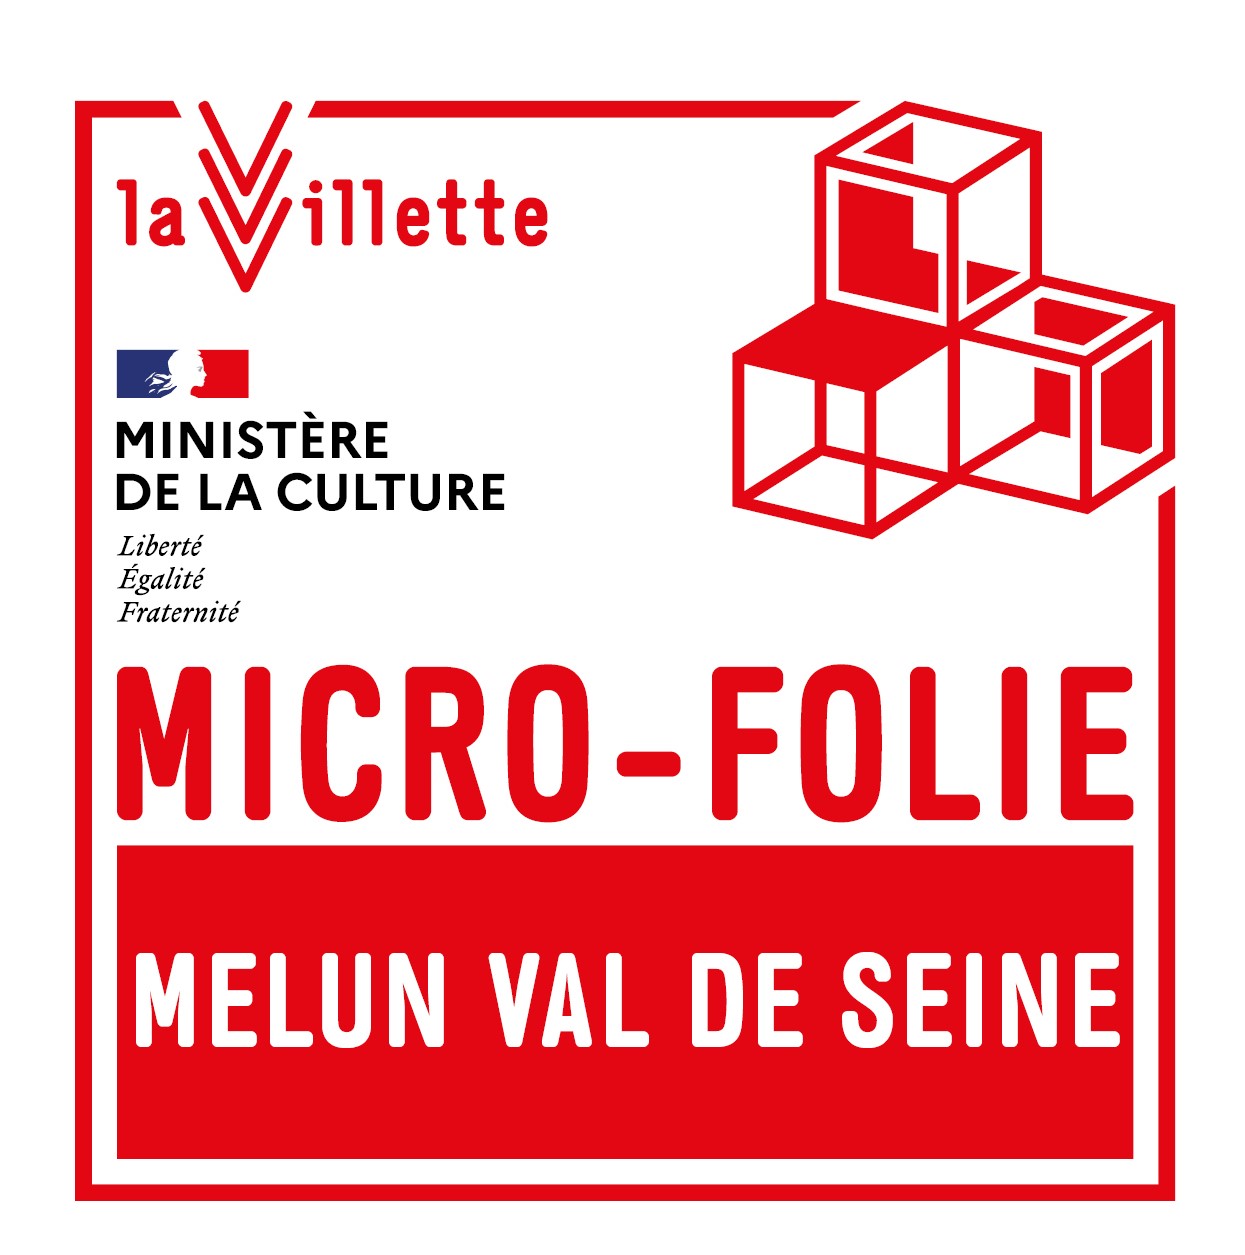 Micro Folie Melun Val de Seine (Retour à la page d'accueil)